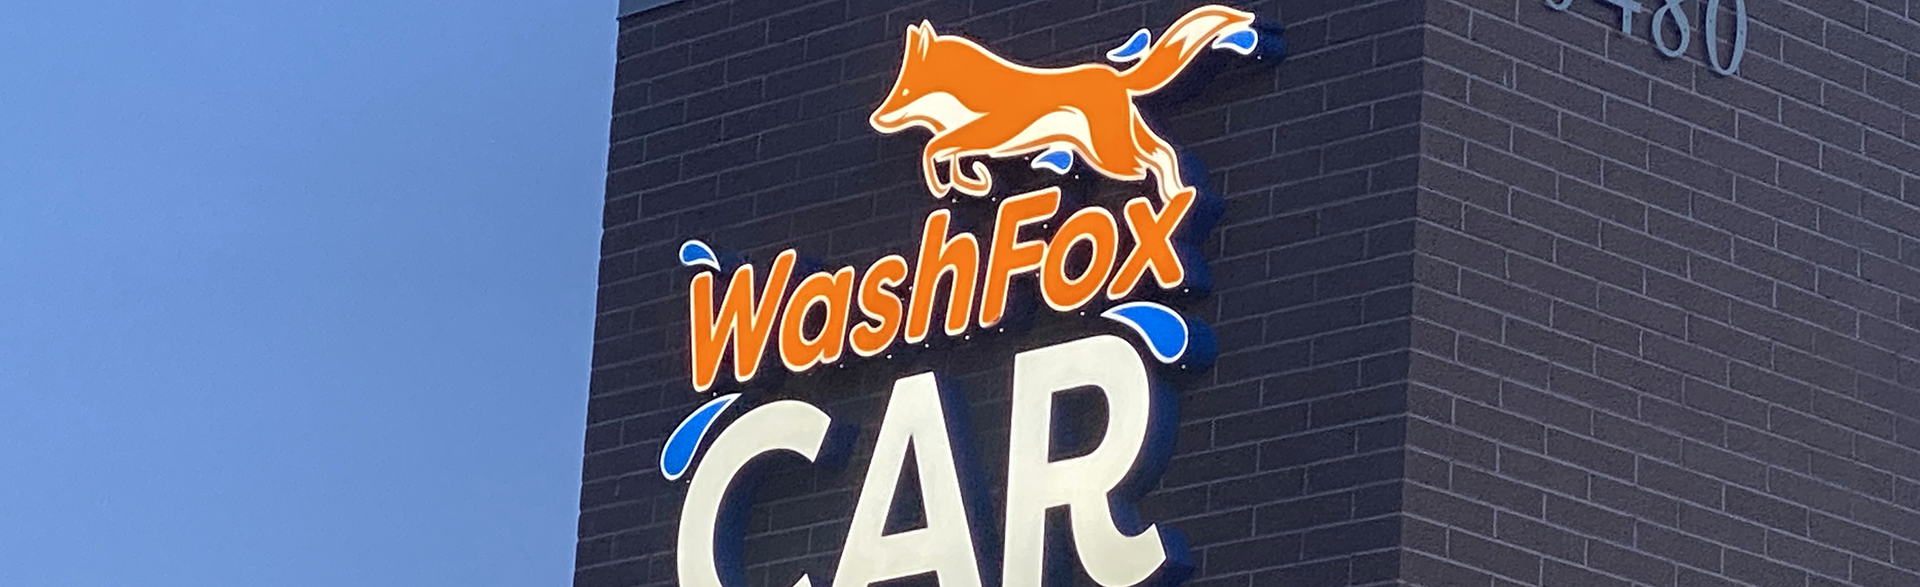 washfox car wash thornton commerce city wash options 02